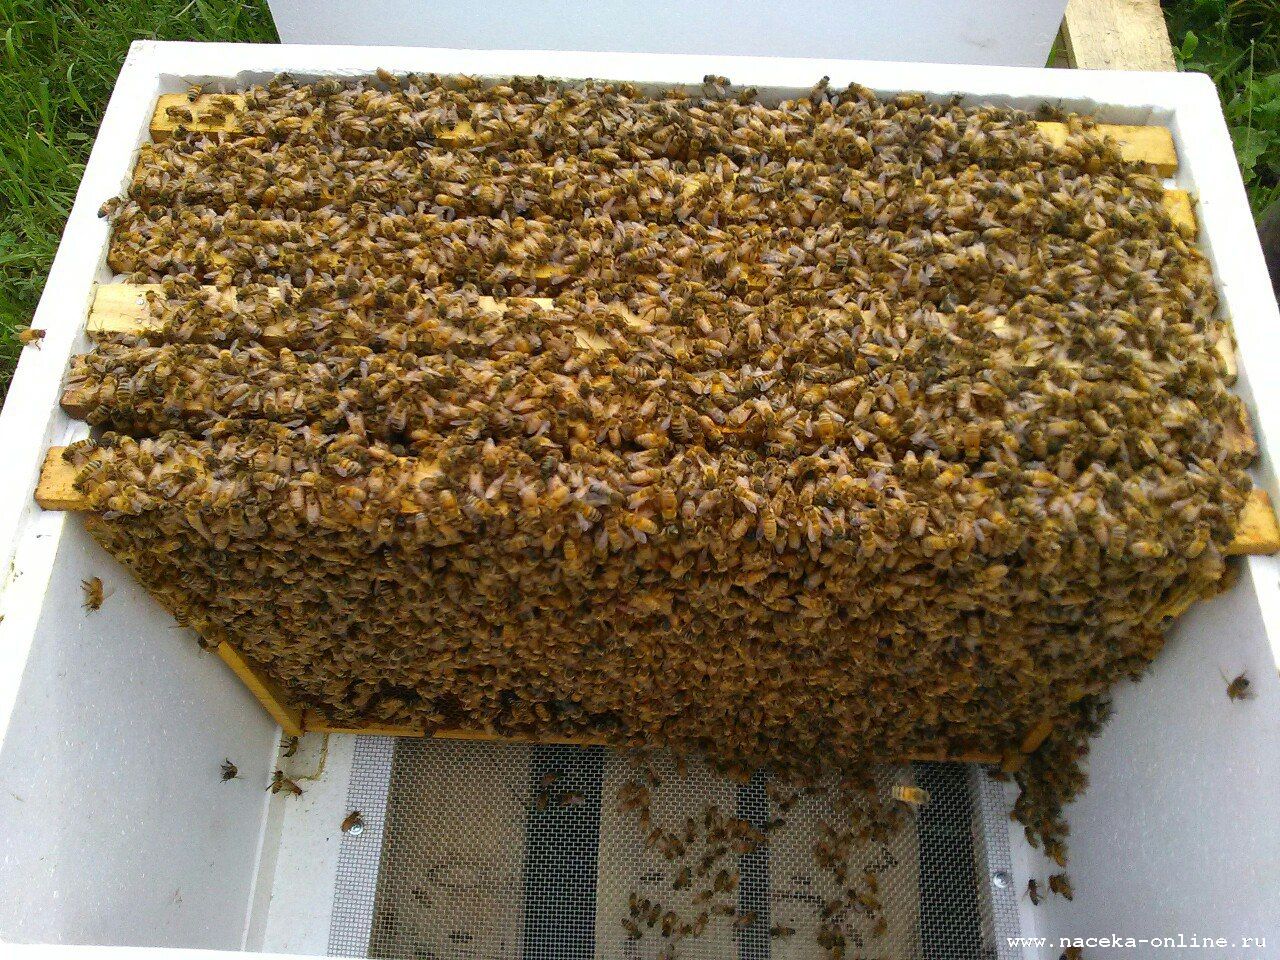 Пчелосемьями купить краснодарский. Пчелопакеты Бакфаст. Пчелопакеты украинской Степной пчелы. Пчелиный пакет. Бессотовый пчелопакет.